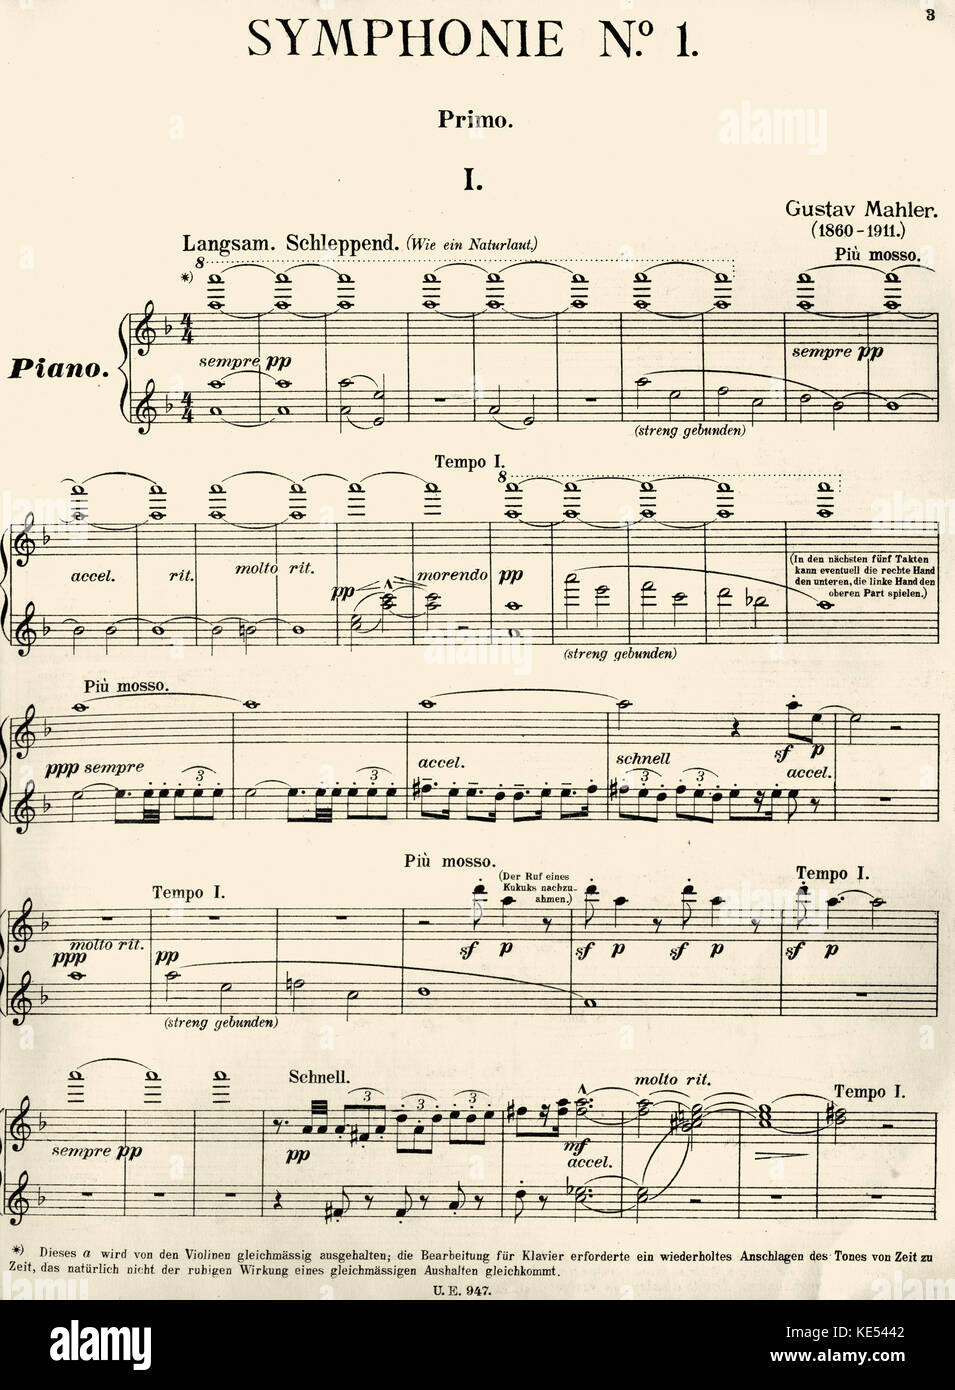 Gustav Mahler Symphonie n° 1 en ré majeur. Première page de score pour la  partie Primo Piano. Arrangement pour duo de piano par Bruno Major.  Compositeur Autrichien, 7 juillet 1860 - 18 mai 1911 Photo Stock - Alamy